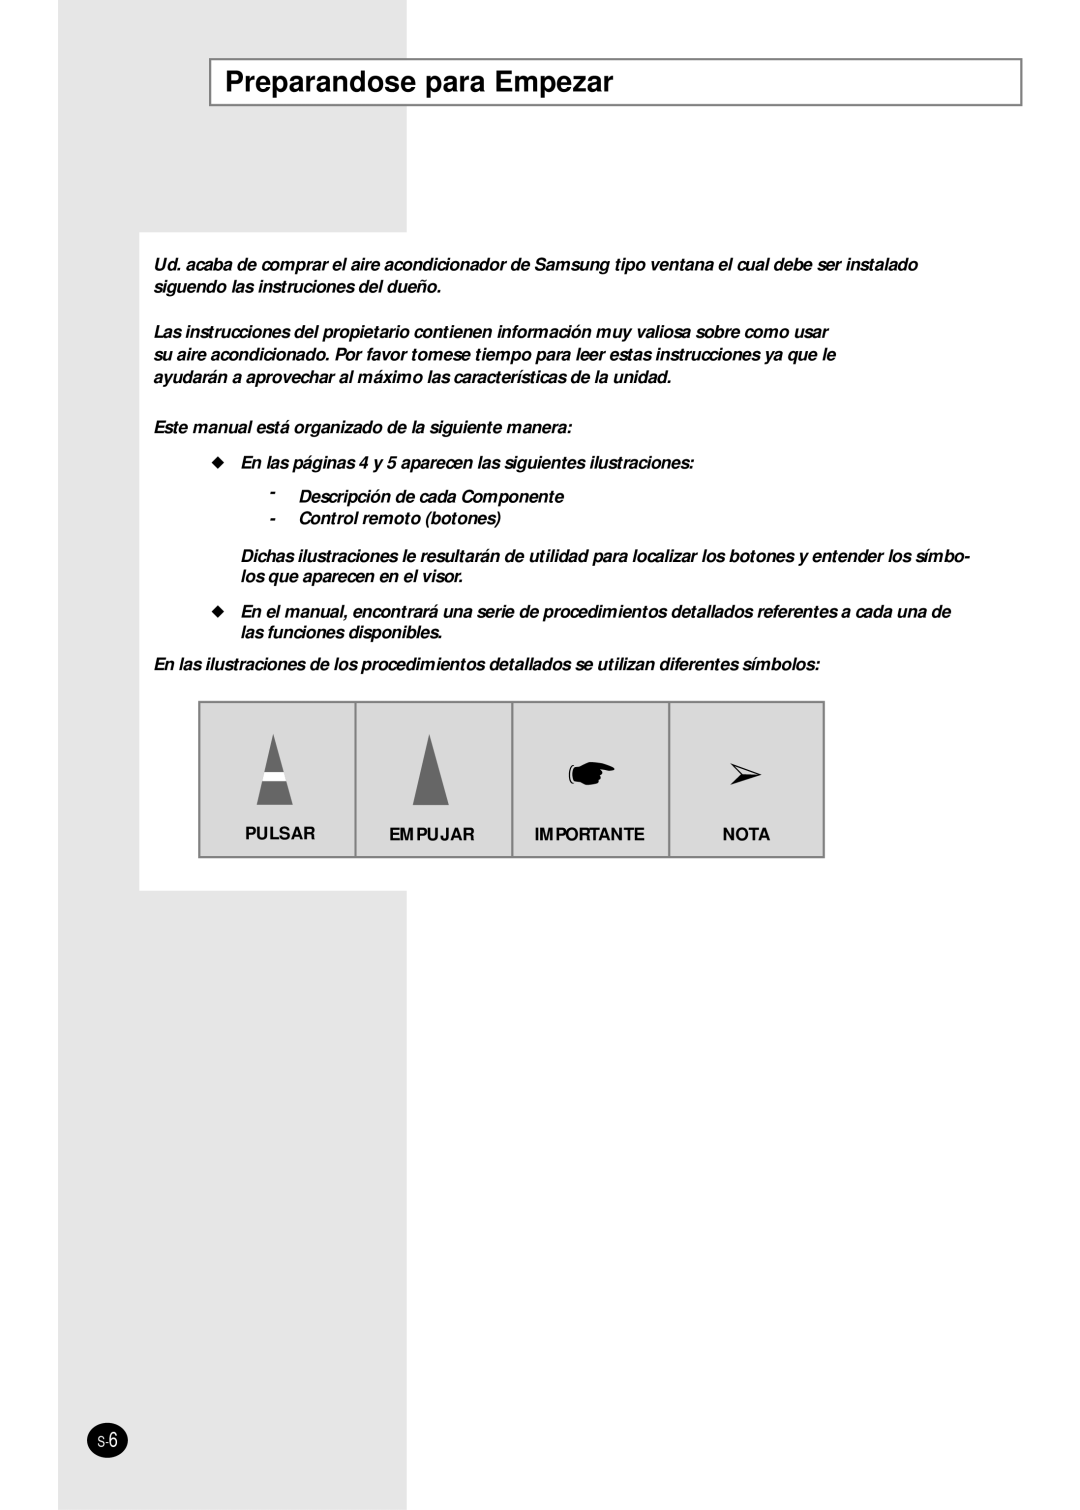 Samsung manual Descripción de cada Componente, Control remoto botones, Pulsar, Empujar, Importante, Nota 